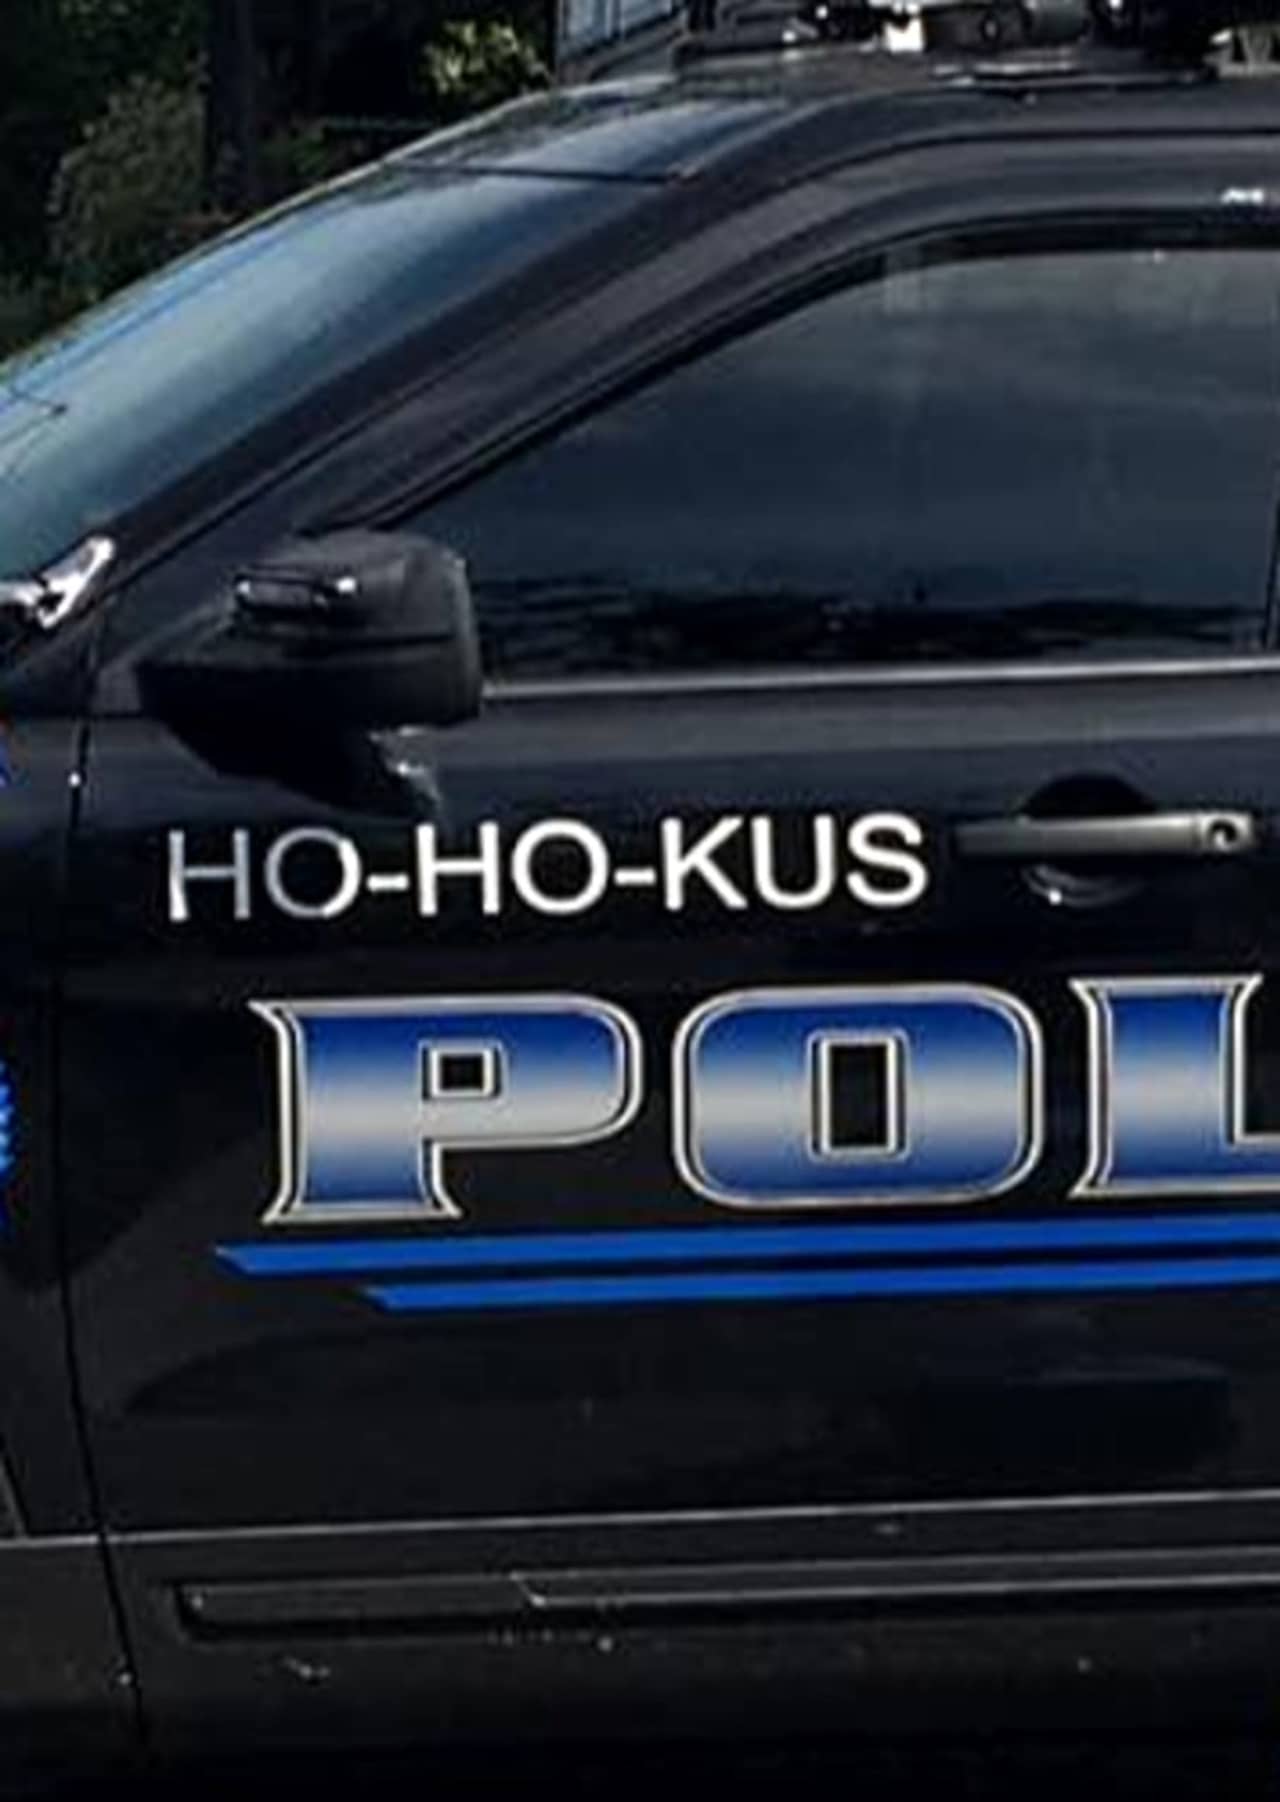 Ho-Ho-Kus police